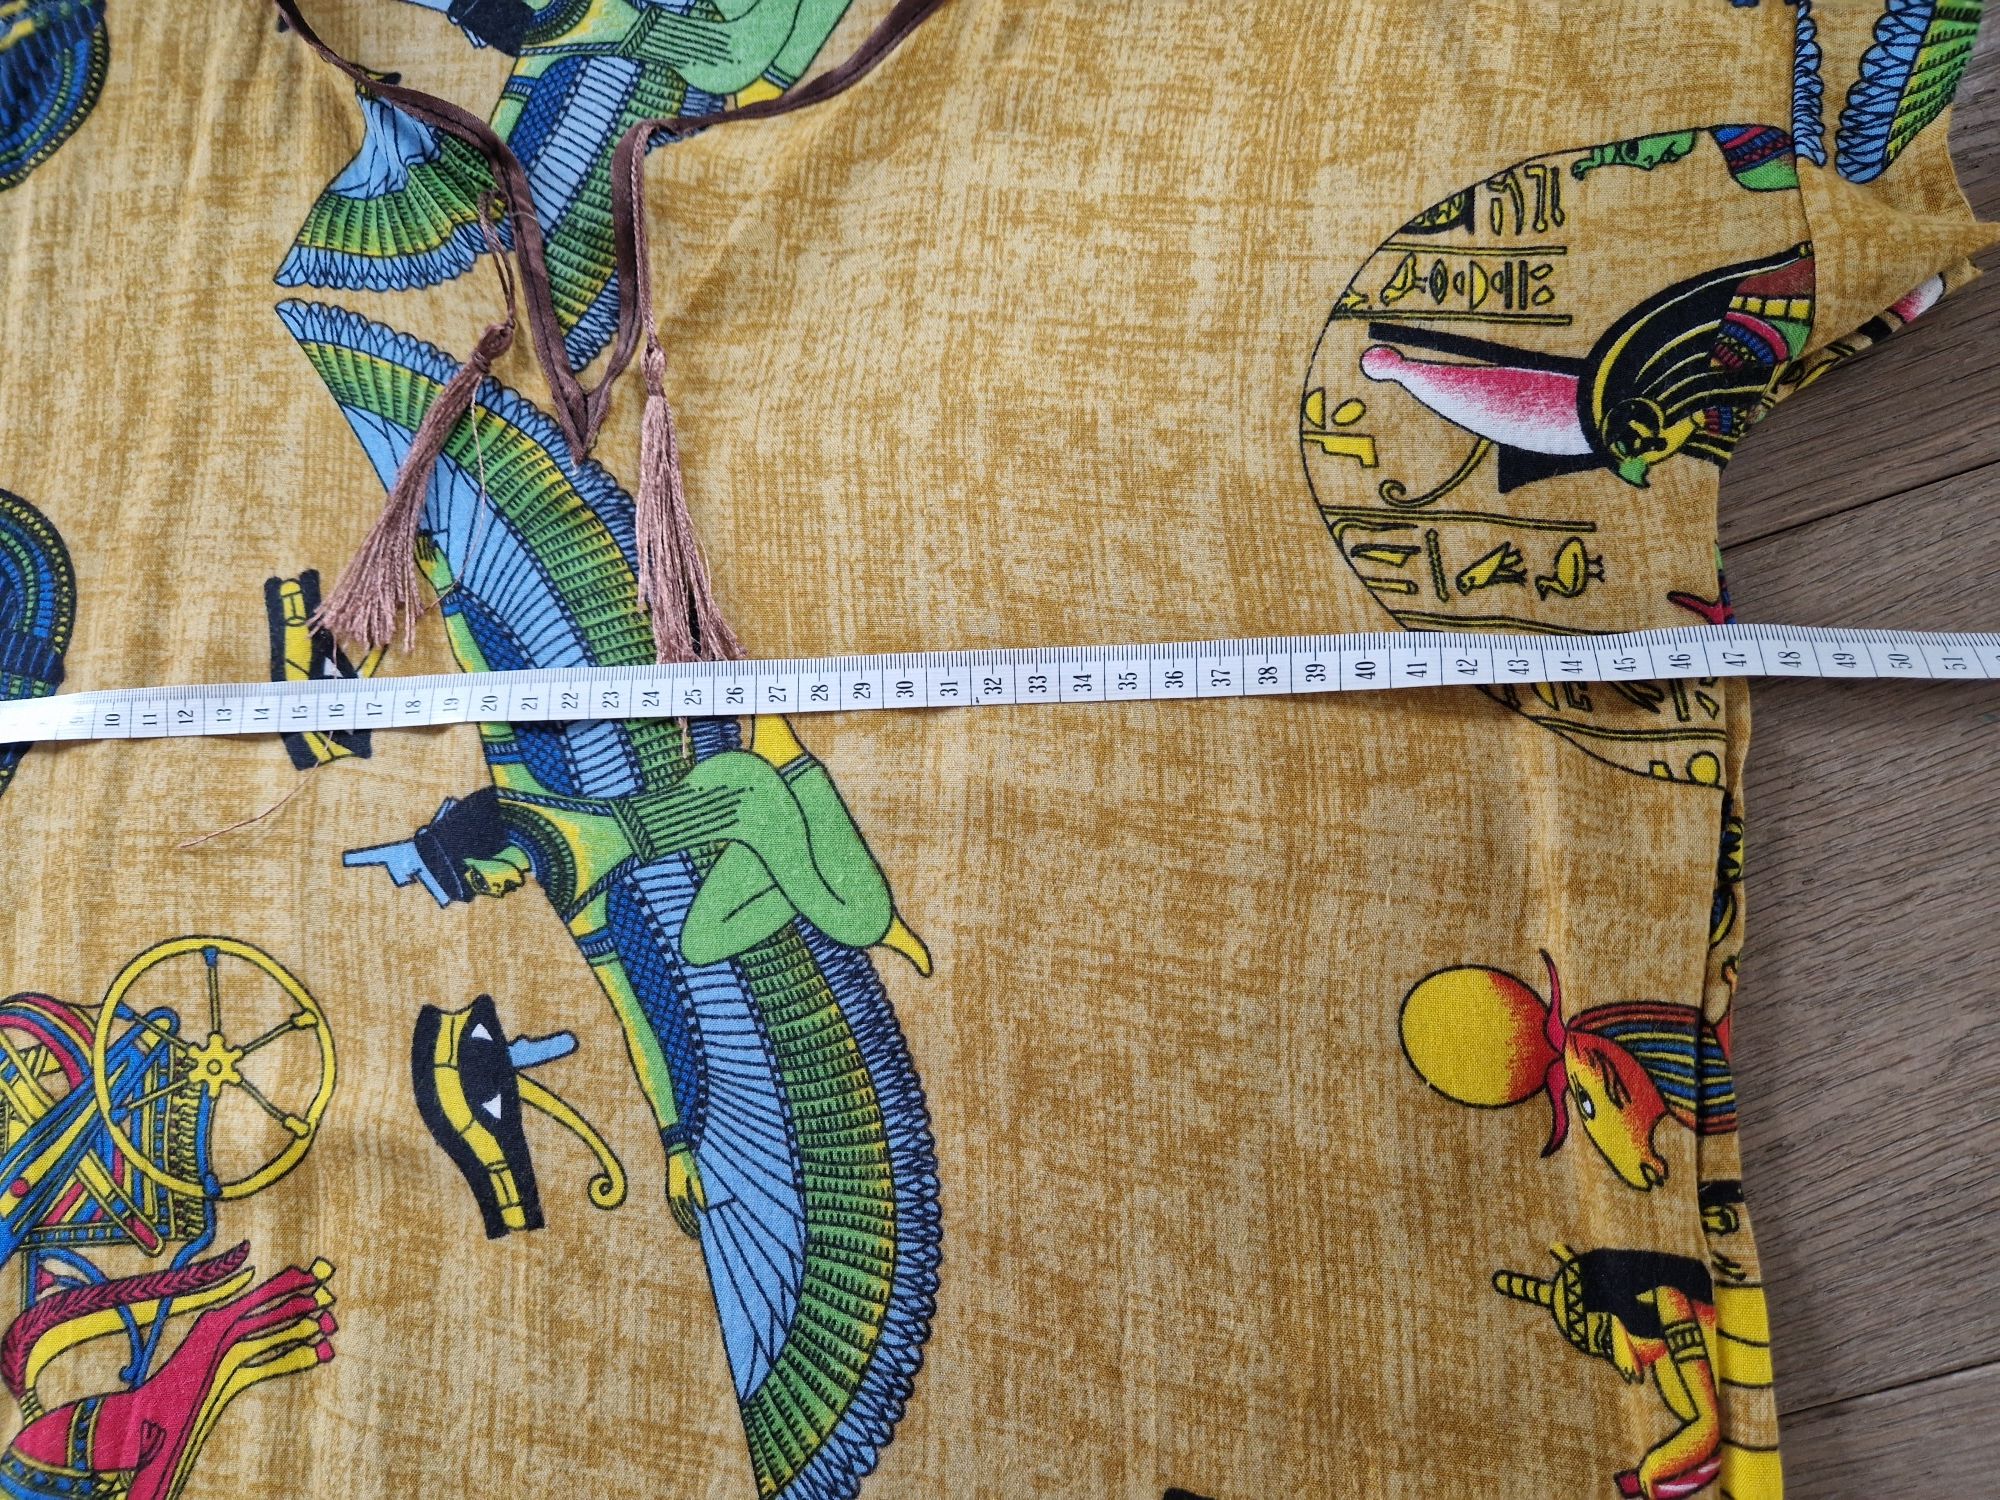 Bluzka sukienka tunika papirus Egipt piramidy bogowie lekka zwiewna